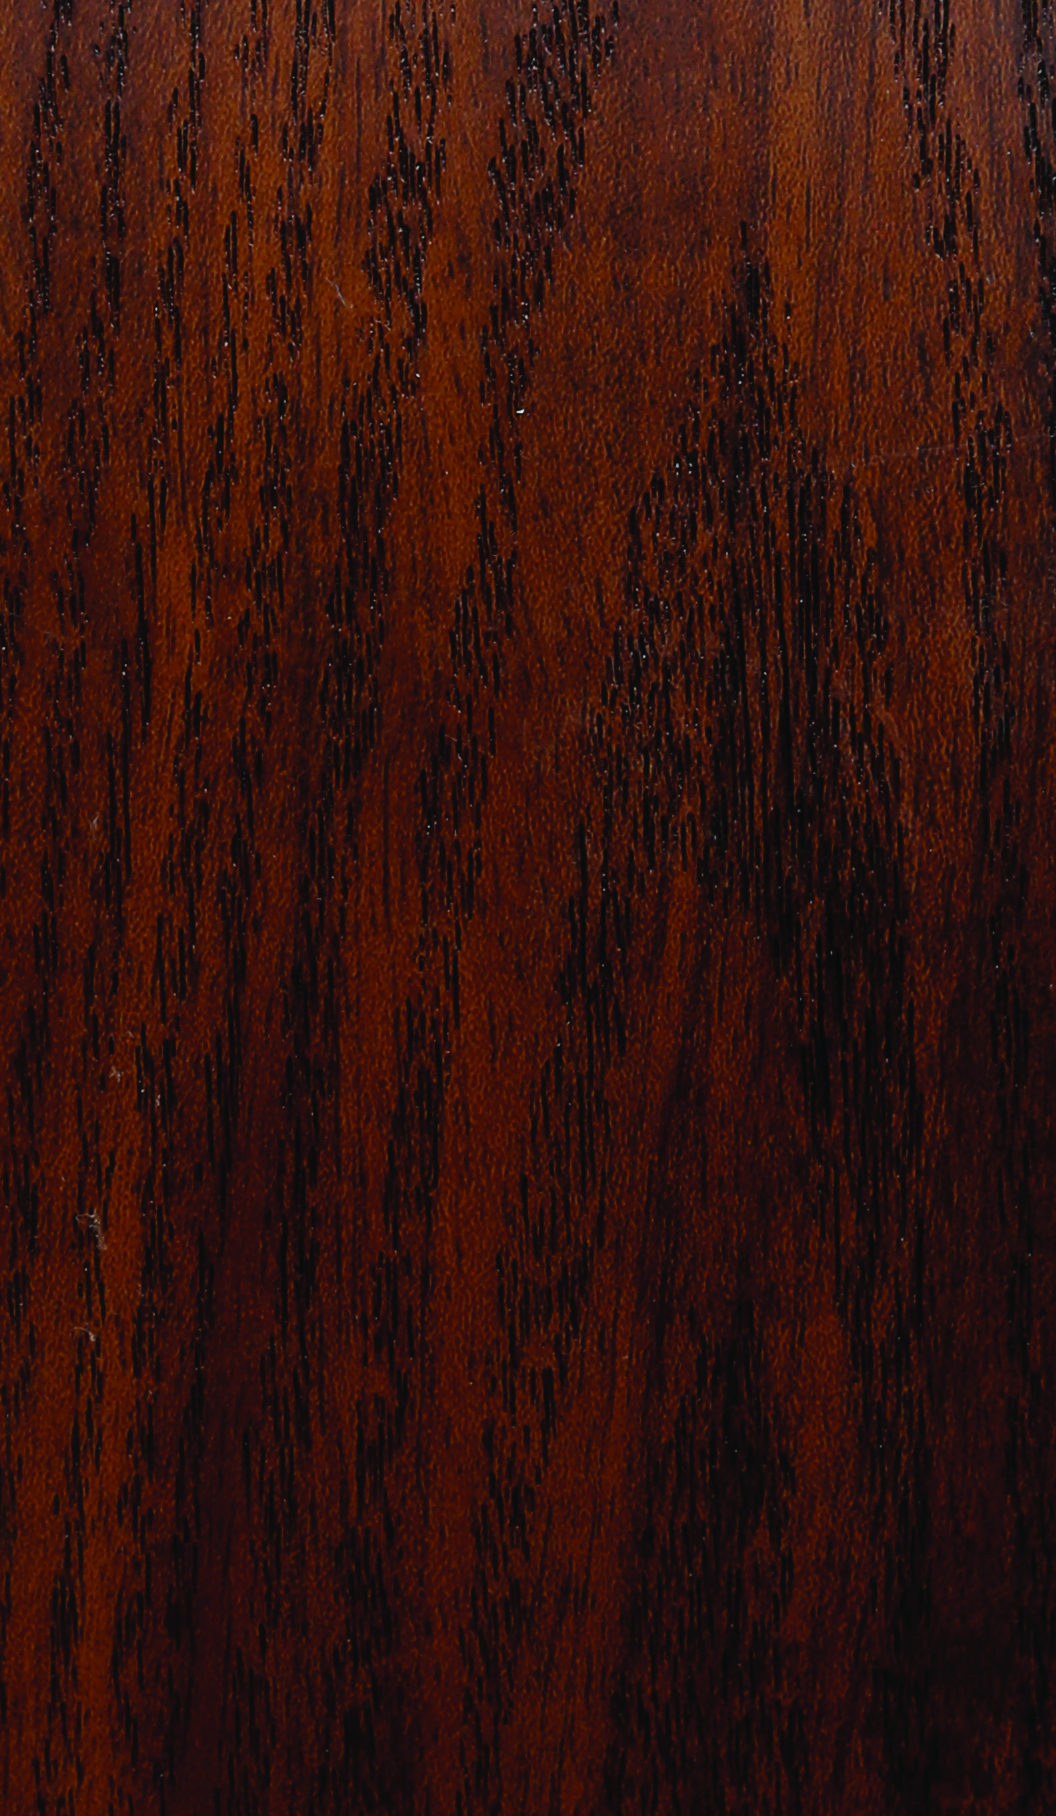 供应用于橱柜门板|衣柜门板|橱柜柜体的包覆门板免漆实木镀膜板图片